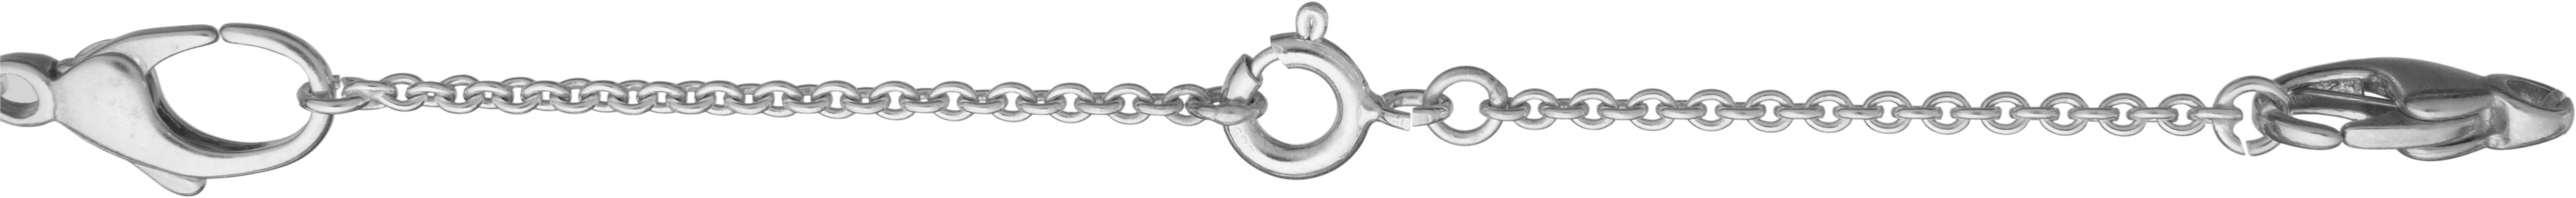 Łańcuszek zabezpieczający ankier srebro 925/- długość 70,00mm, z federingiem i otwartym kółkiem montażowym